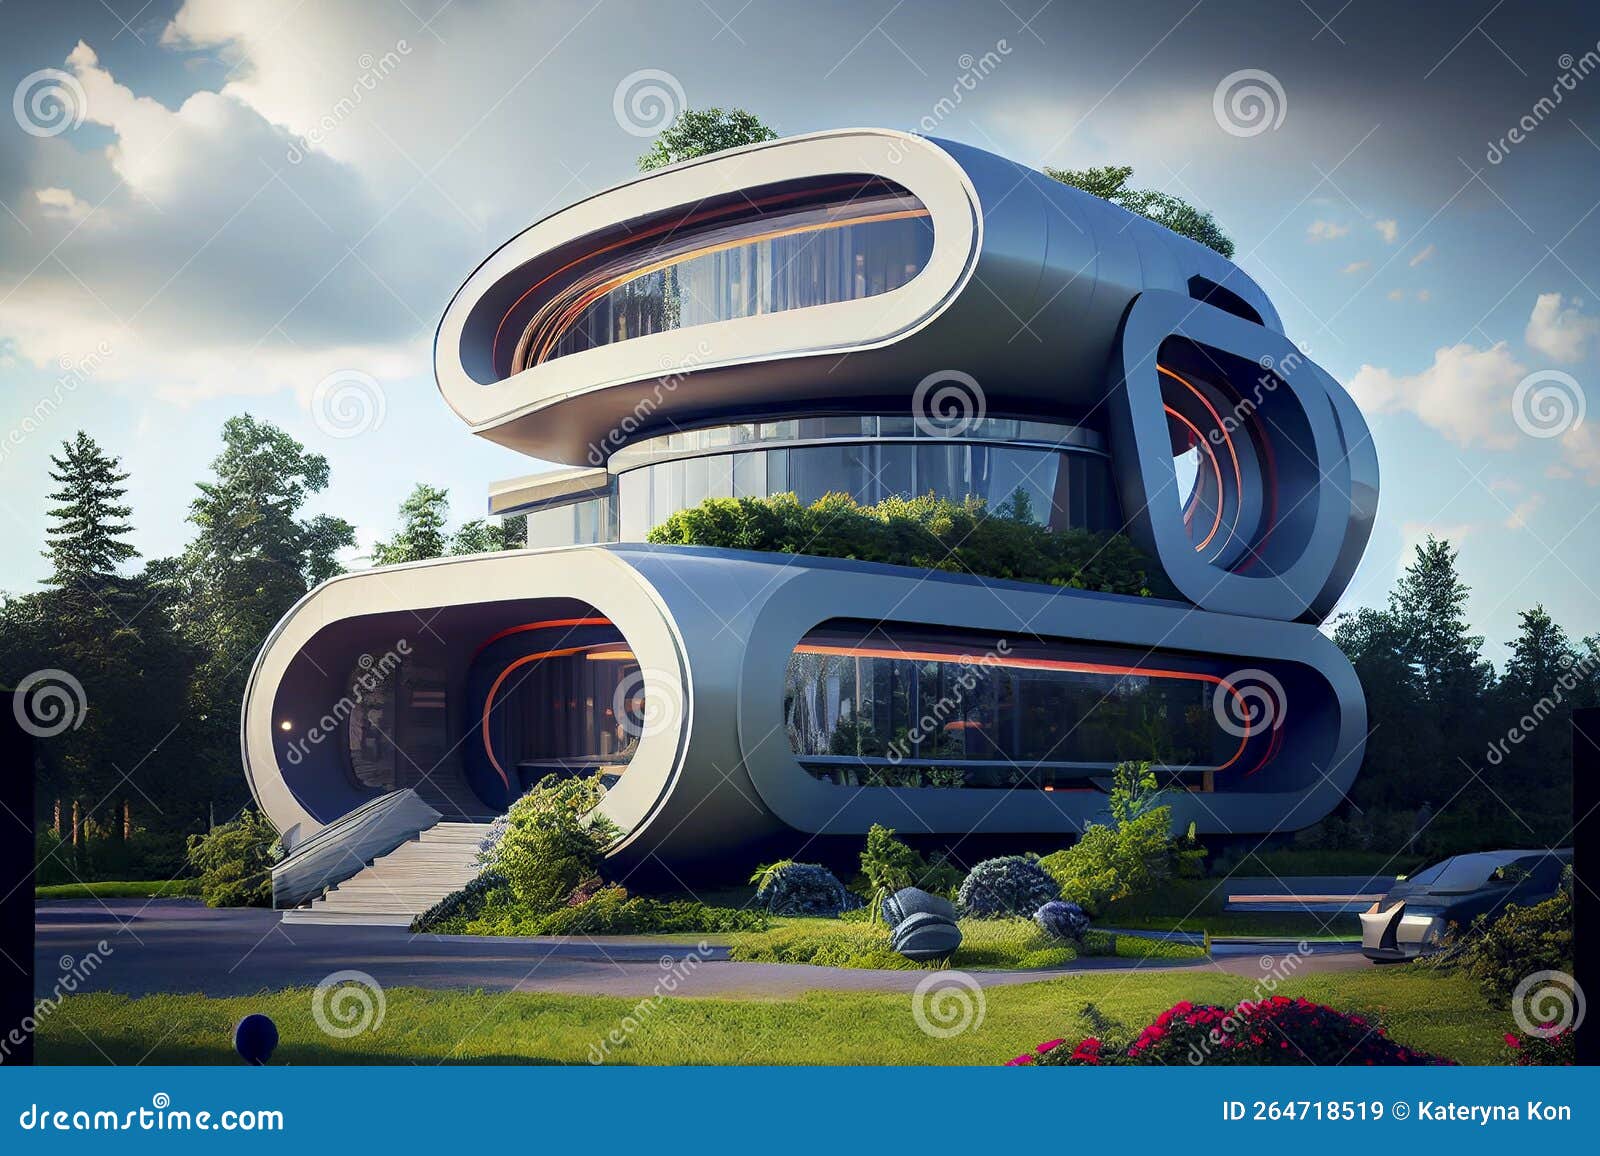 future building designs